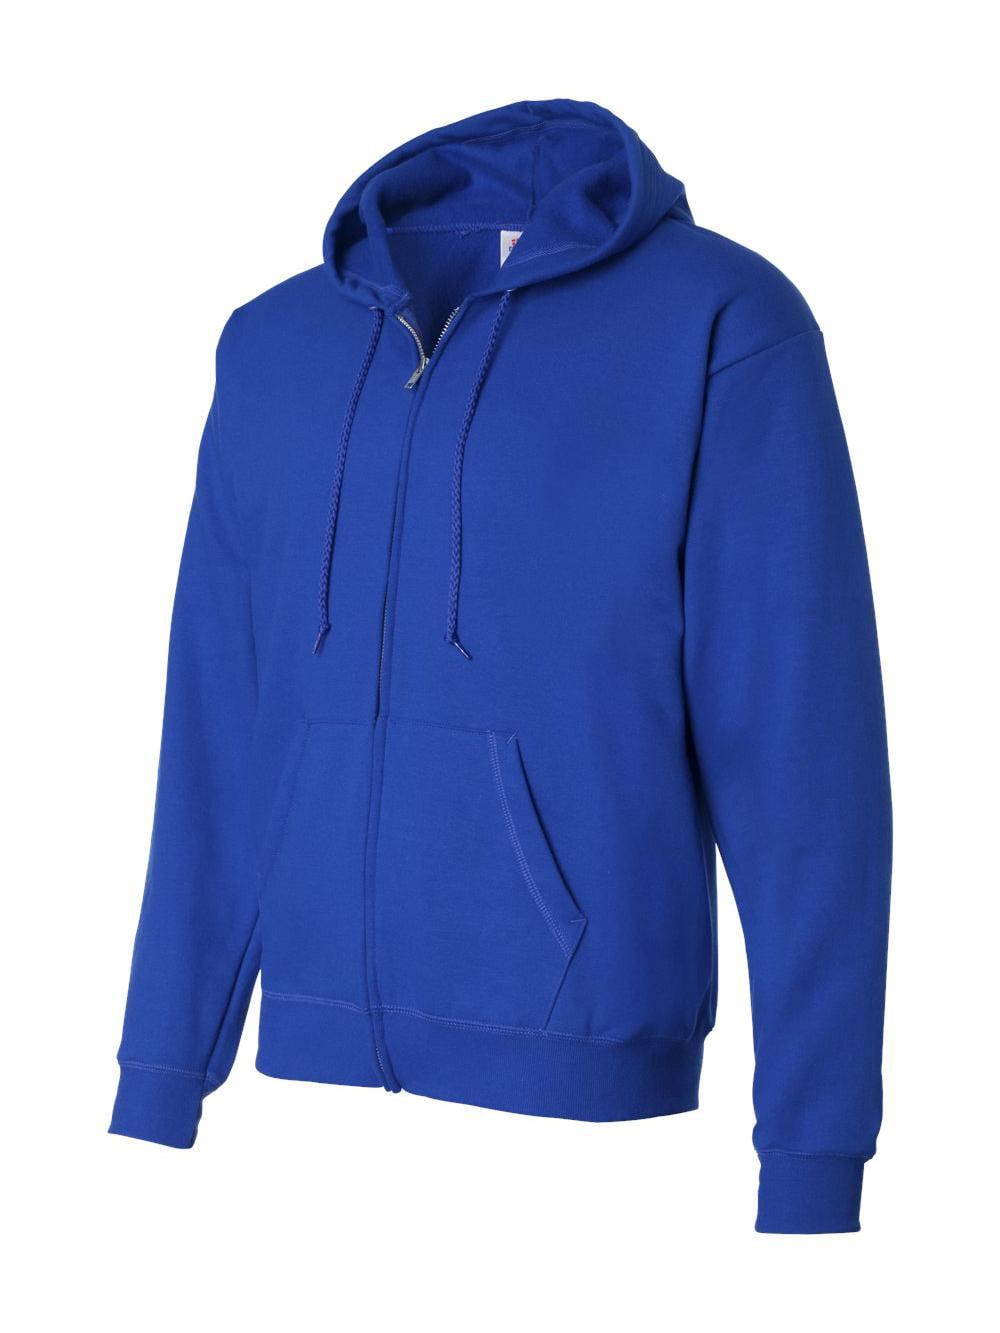 Hanes Ecosmart® Full-Zip Hooded Sweatshirt - Walmart.com